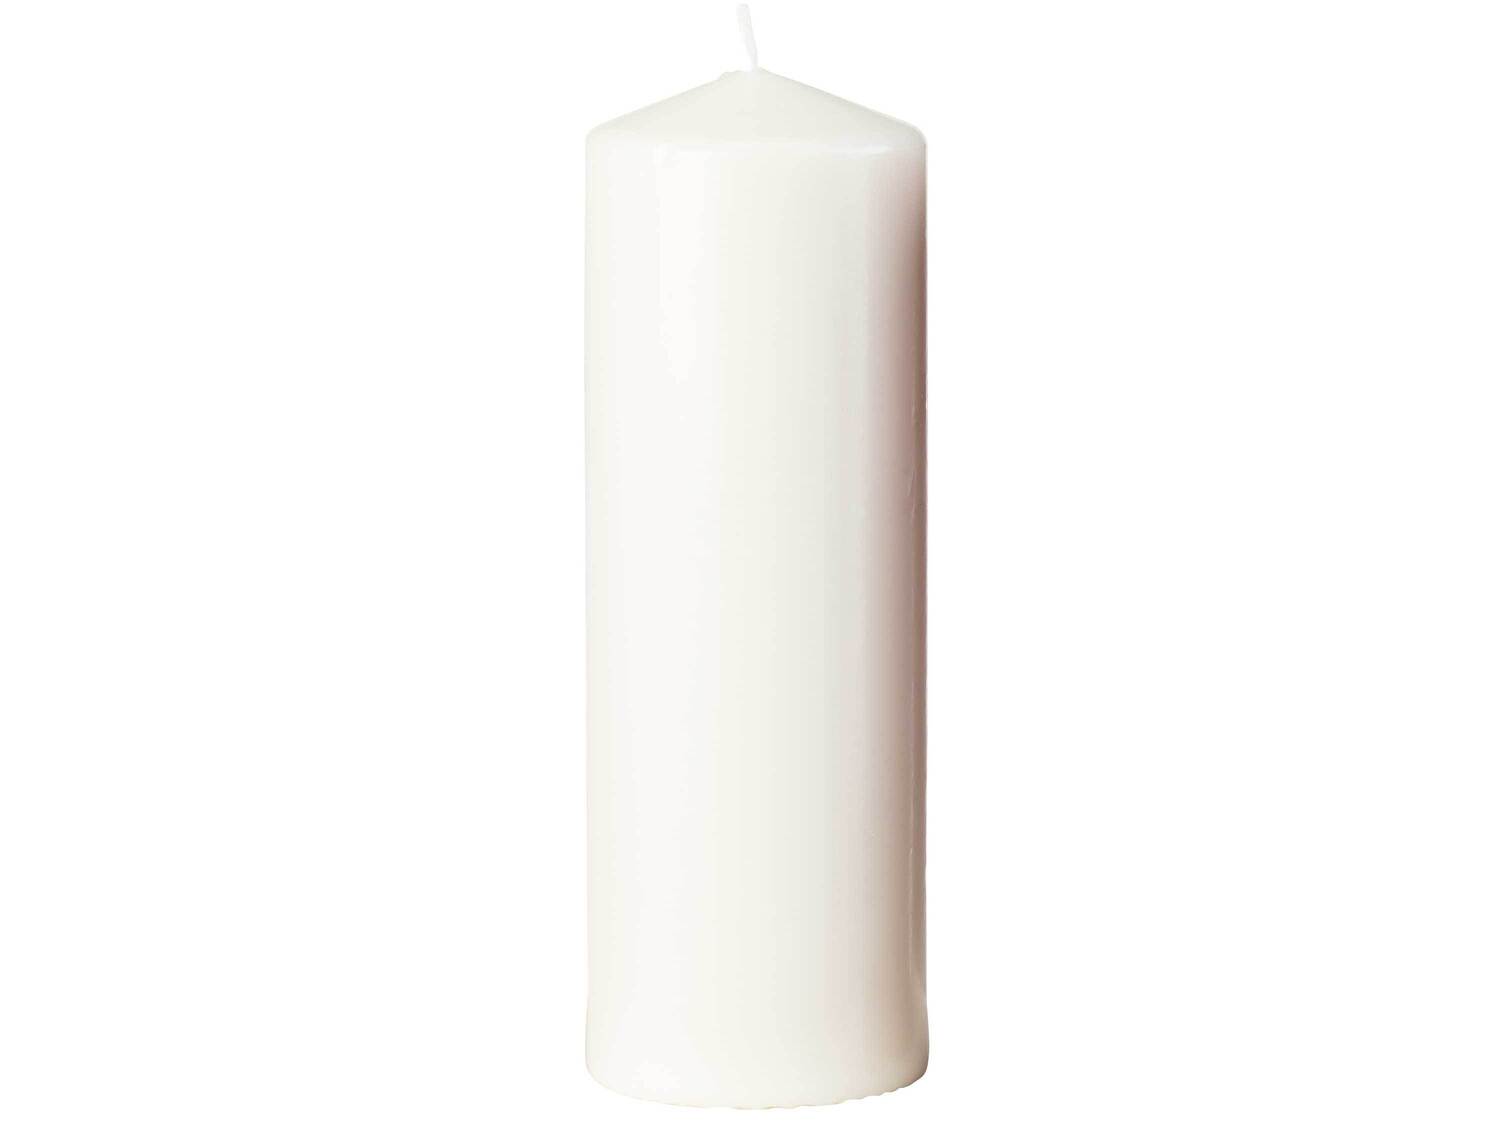 Świeczka Melinera, cena 14,99 PLN  
wymiary: 7,8 x 23 cm (Ø x wys.)
Opis